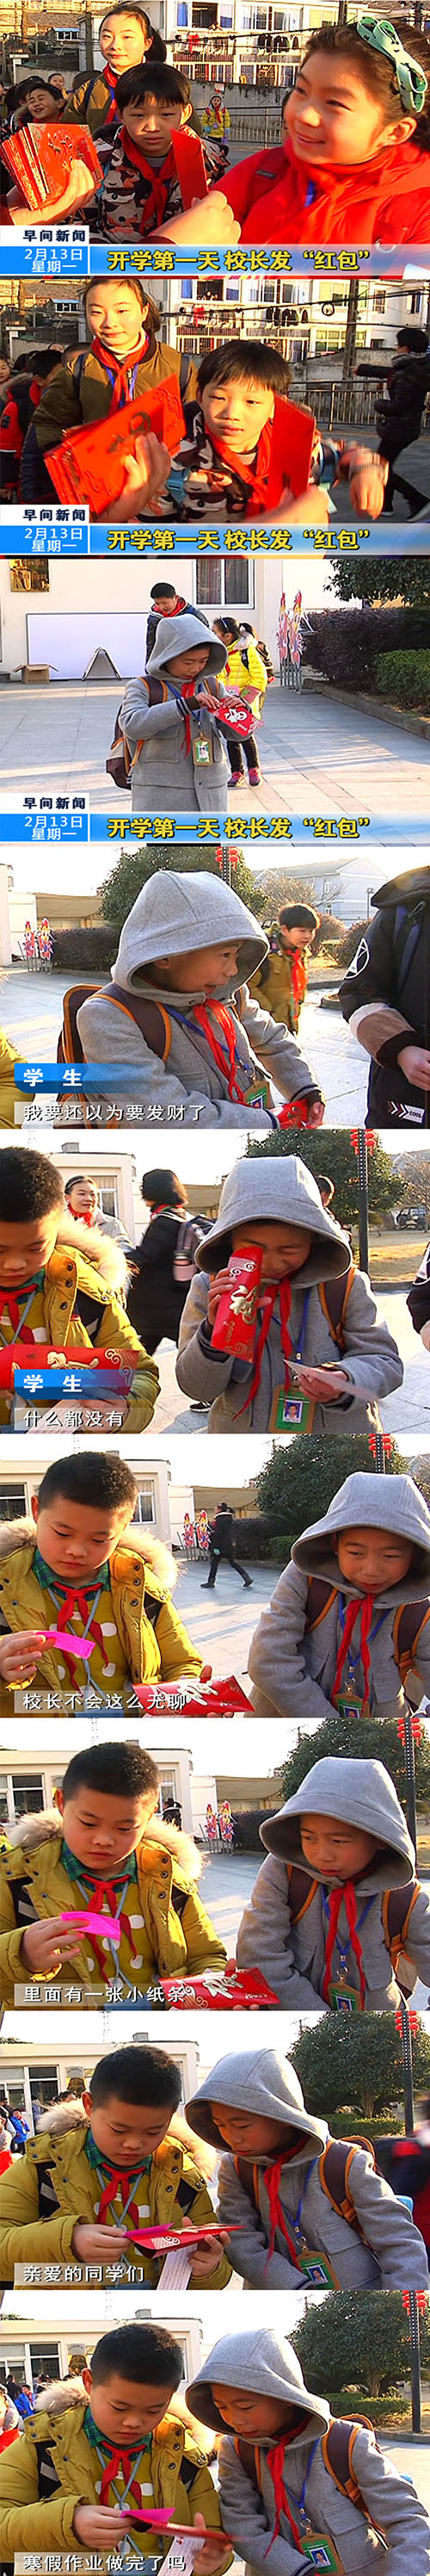 学生收到校长红包 创意红包暖化路人【图】